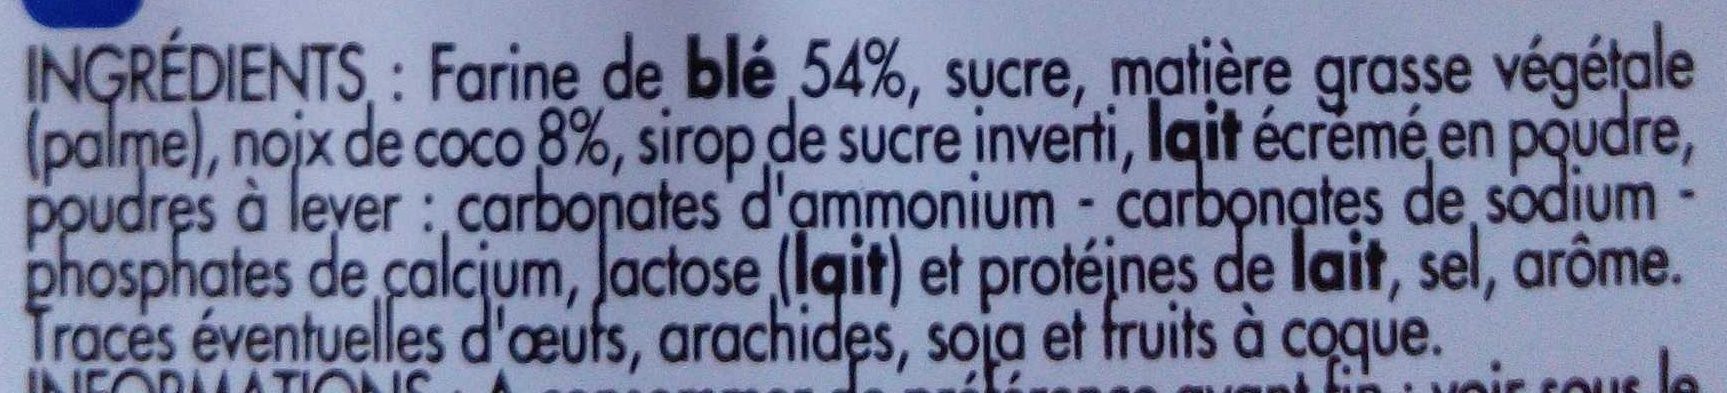 Galets sablés à la noix de coco - Ingredients - fr